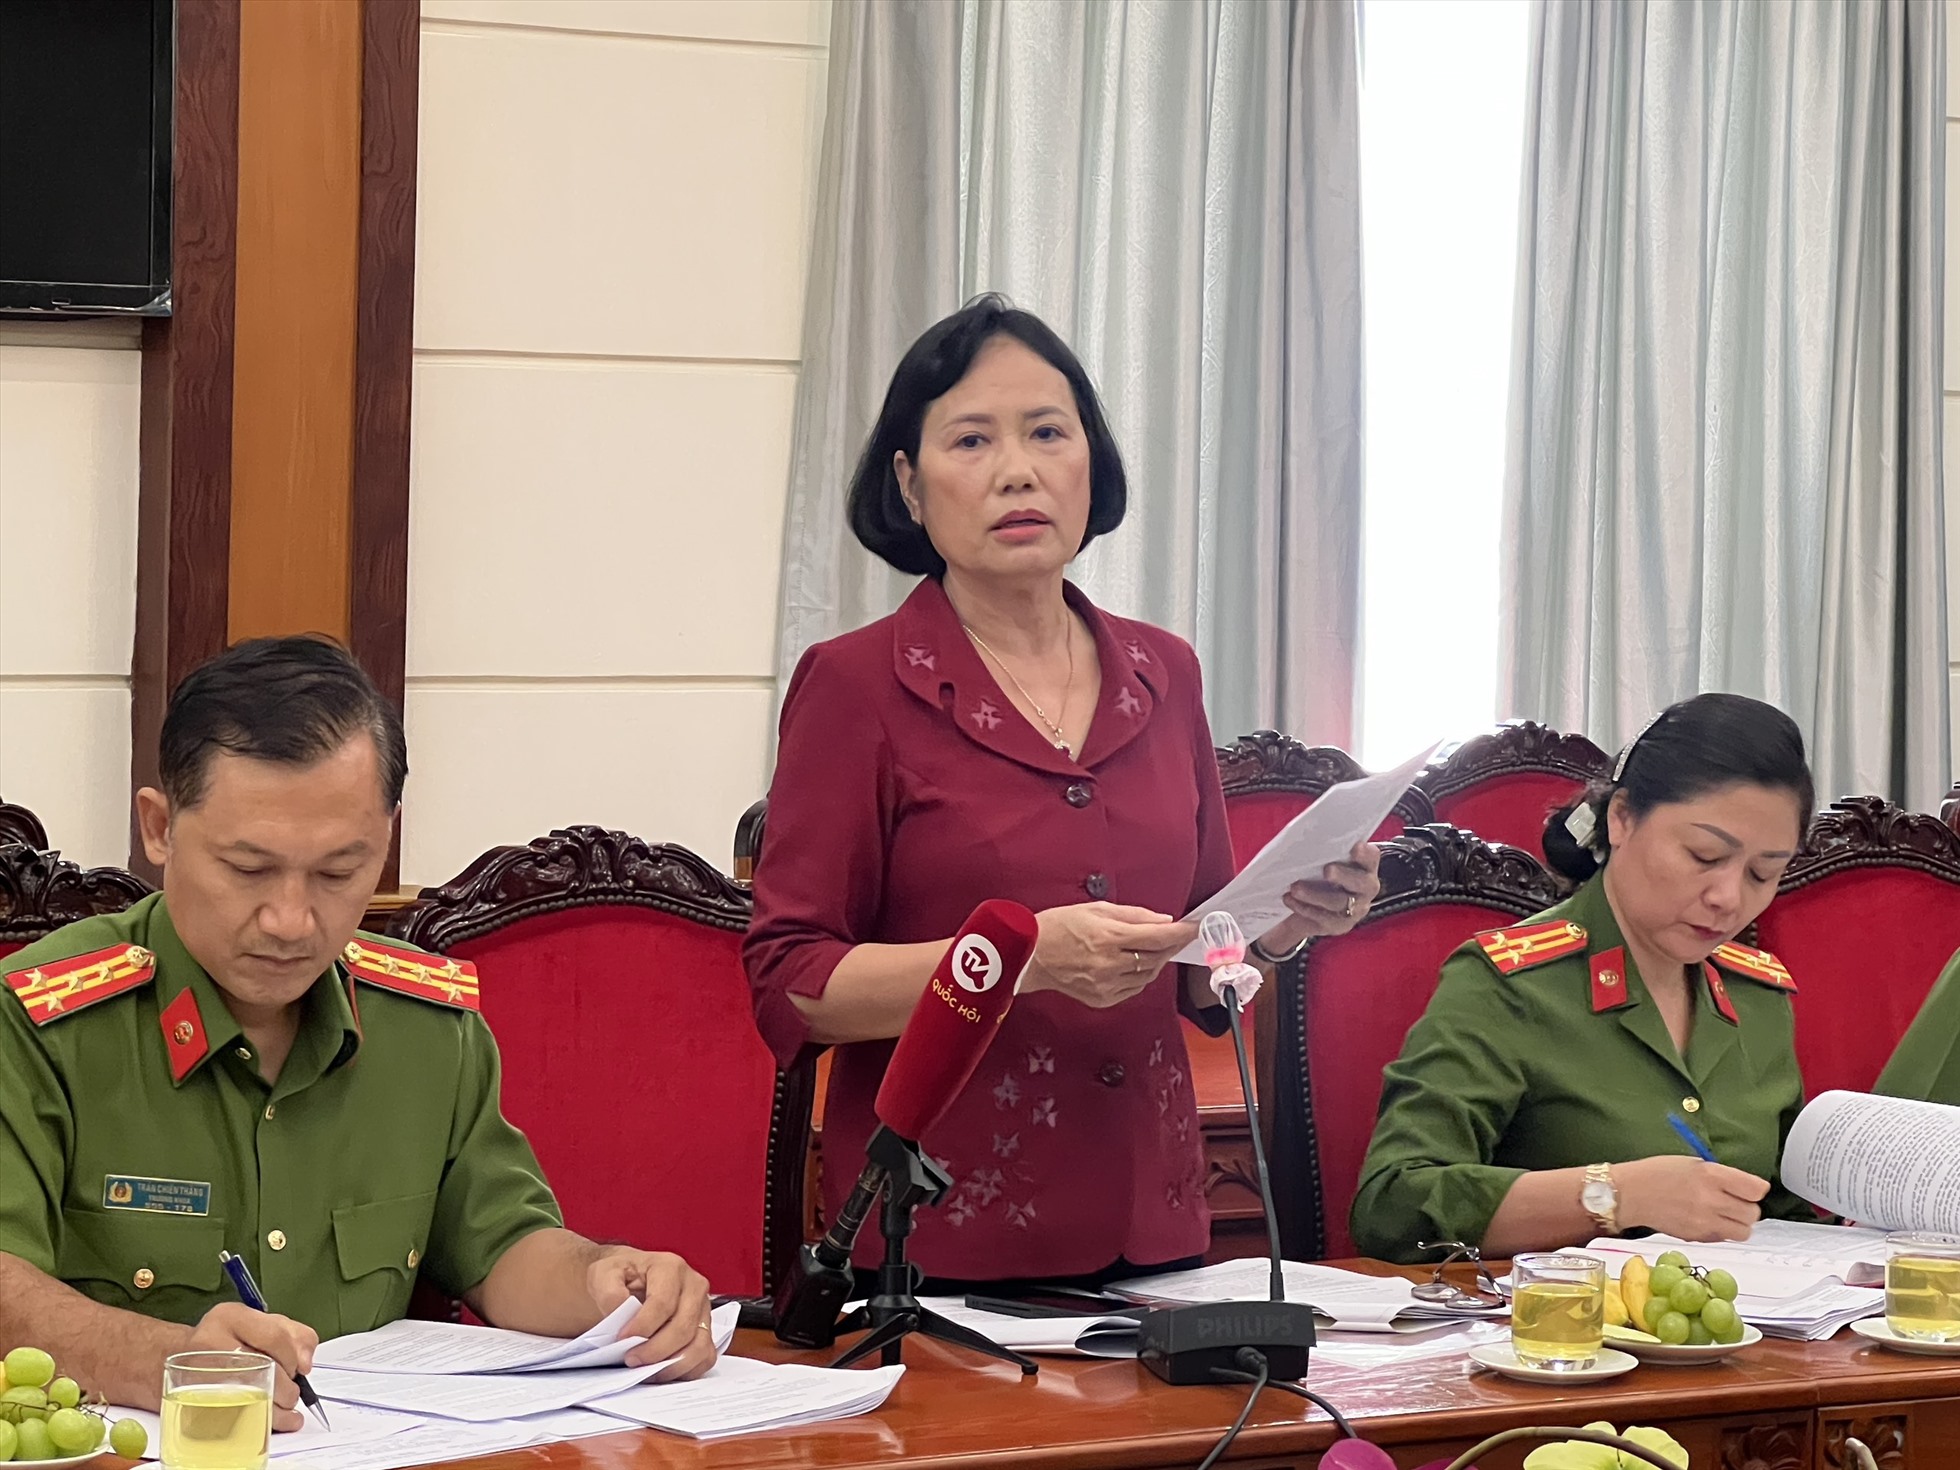 Phó Chủ tịch Hội Luật gia TP Hồ Chí Minh đóng góp nhiều ý kiến vào dự án sửa đổi Luật Căn cước công dân. Ảnh: Khánh Linh